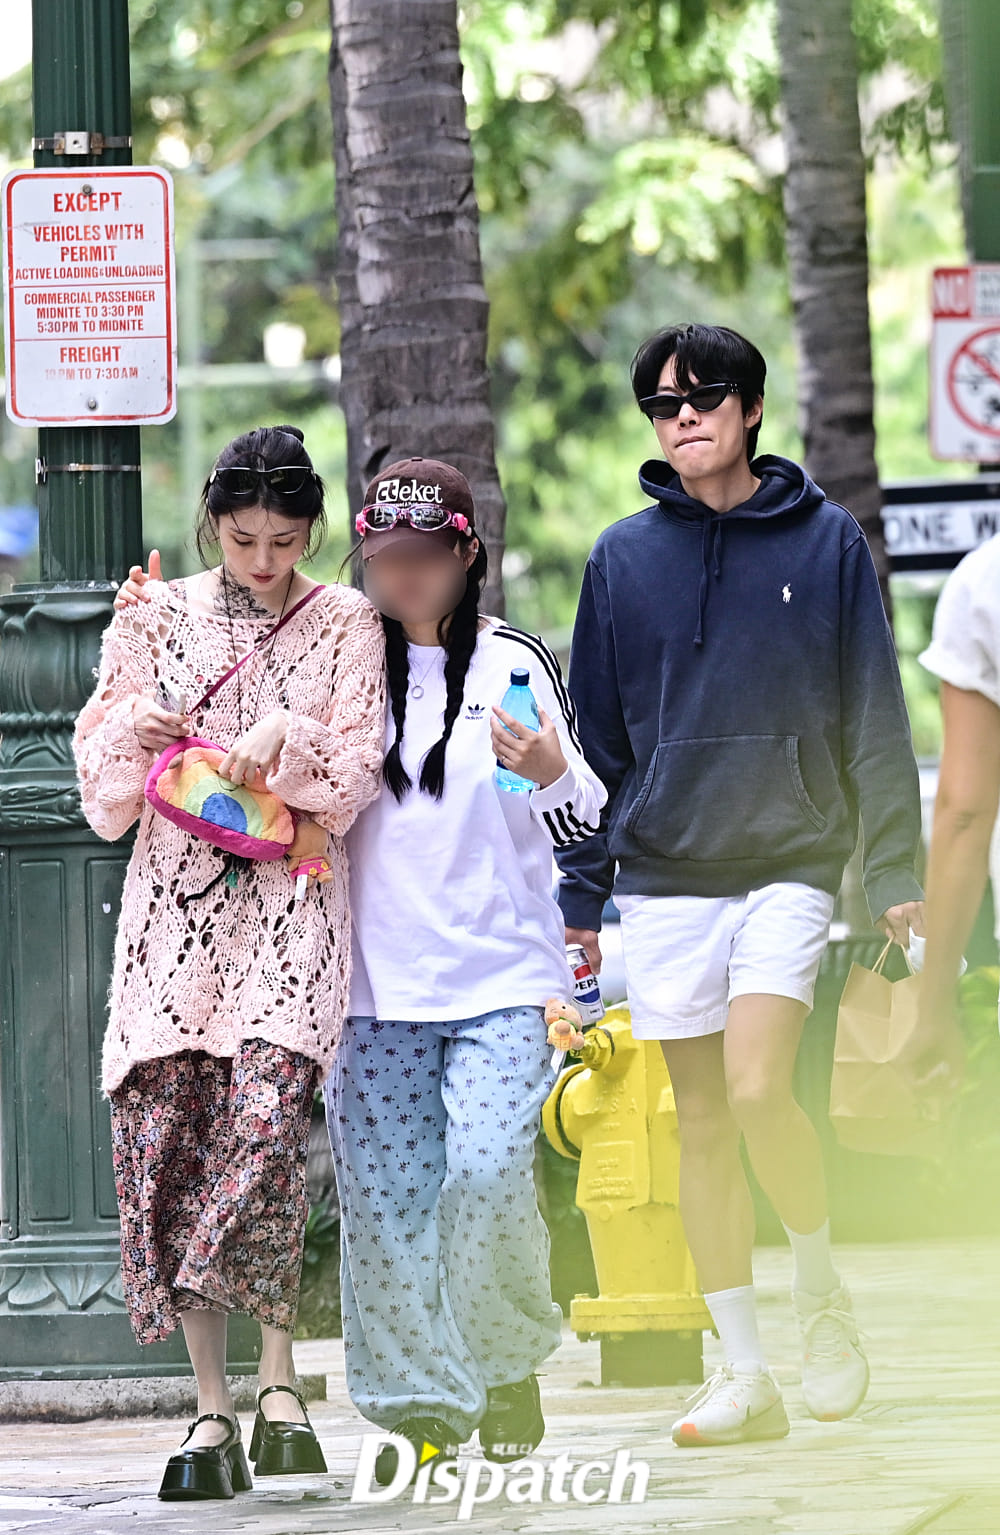 Hình ảnh Han So Hee và Ryu Jun Yeol đi ăn cùng nhau ở Hawaii được Dispatch chụp được sau 1 ngày công khai hẹn hò